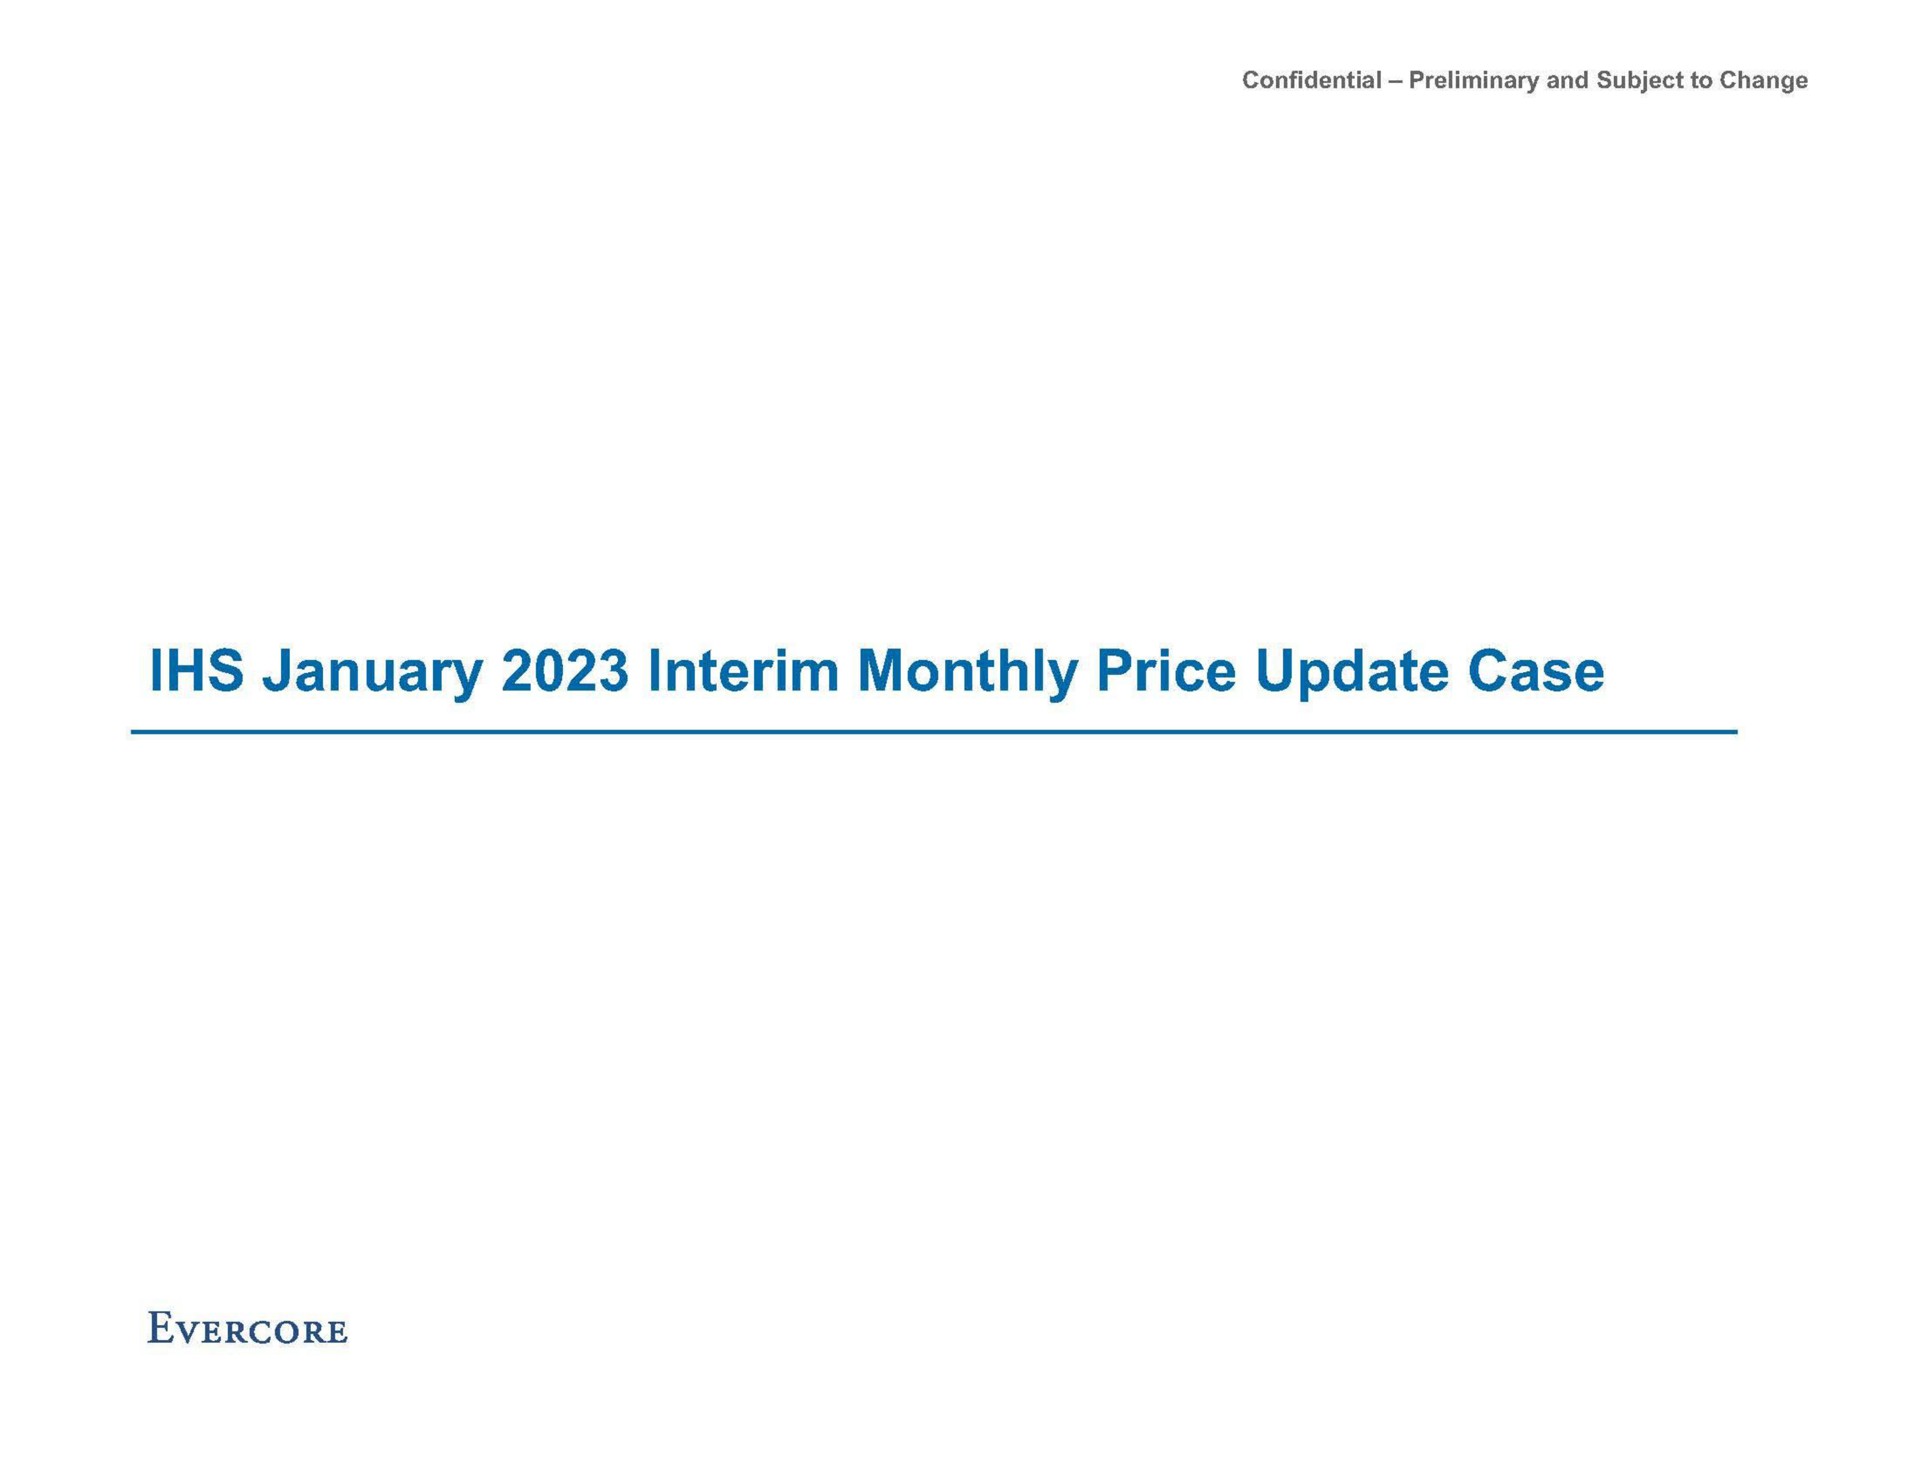 interim monthly price update case | Evercore